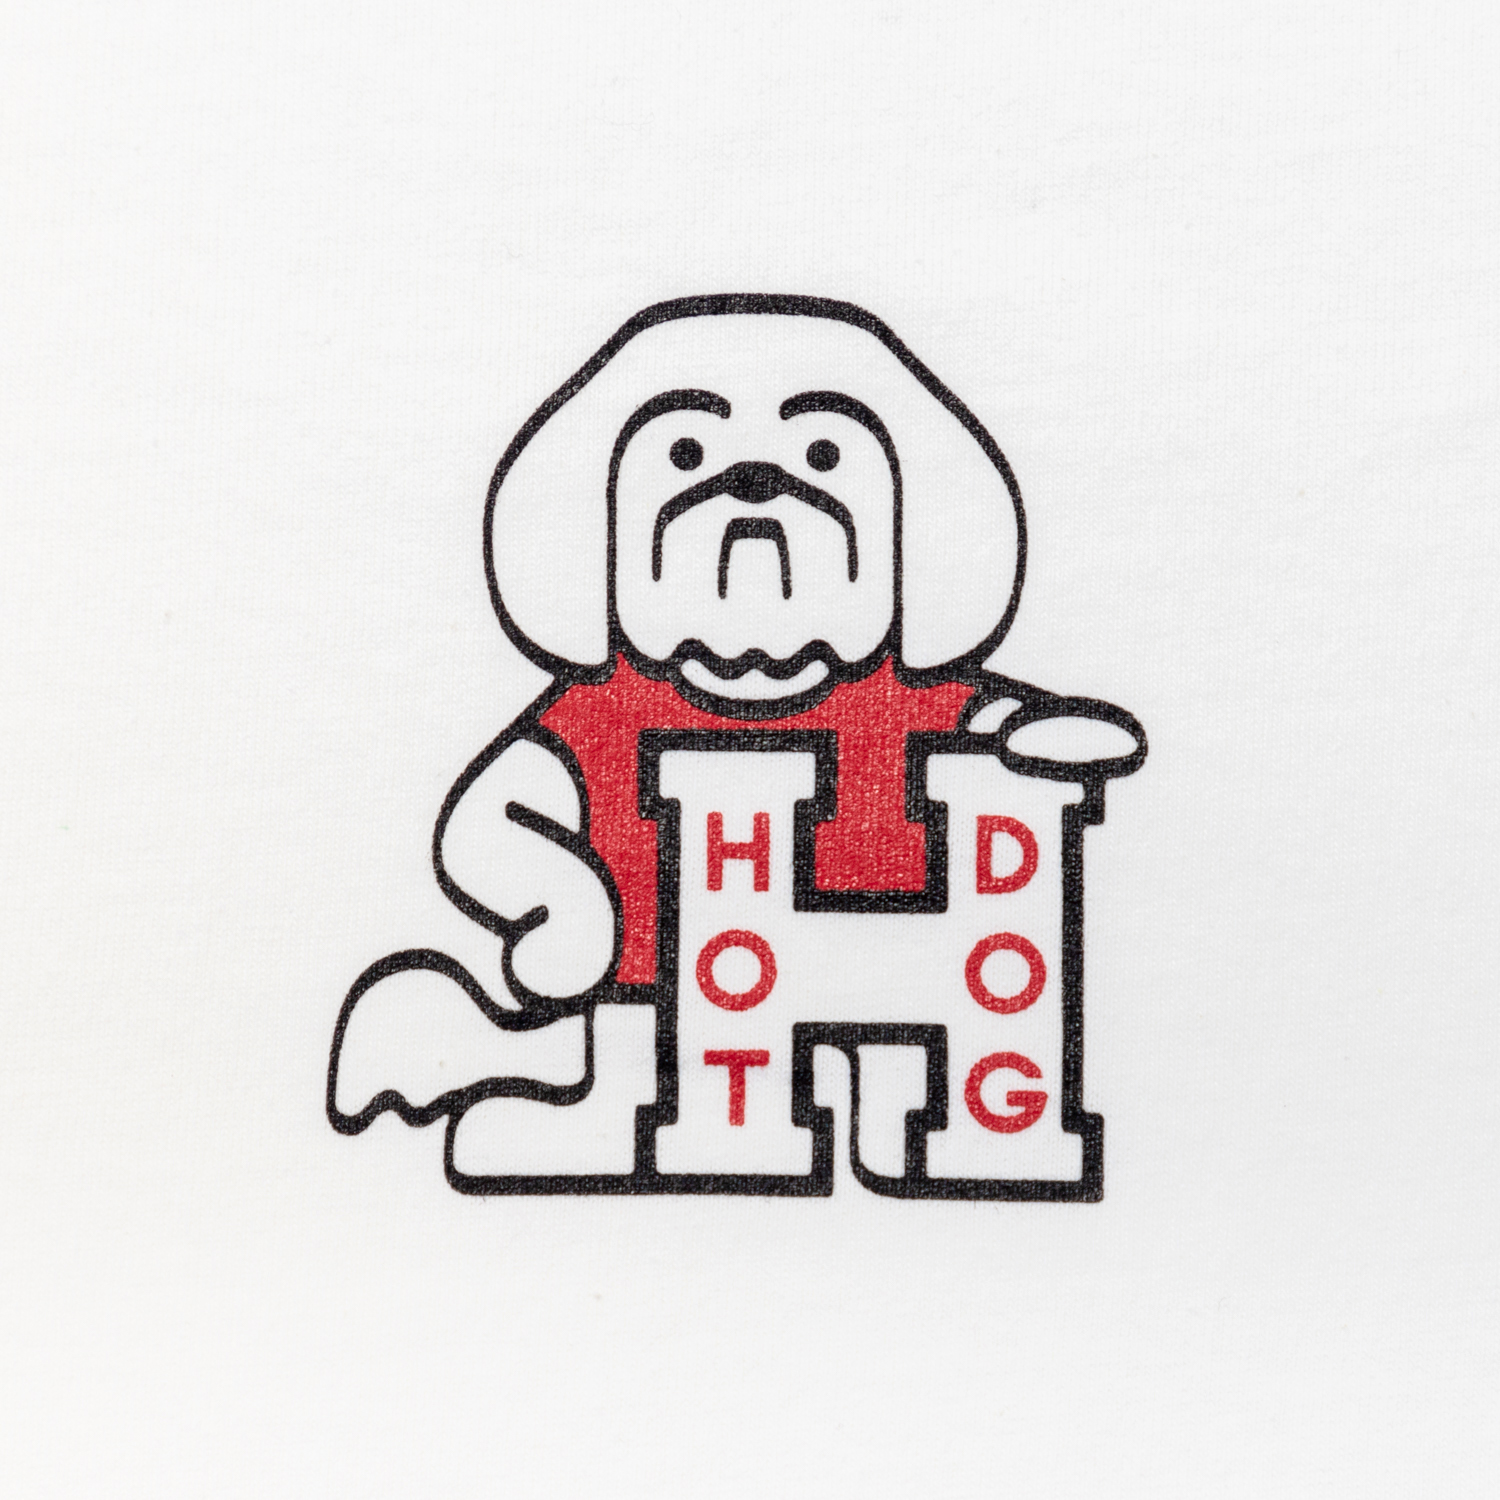 HOT DOG LOGO Tee designed by Hiroshi Iguchi